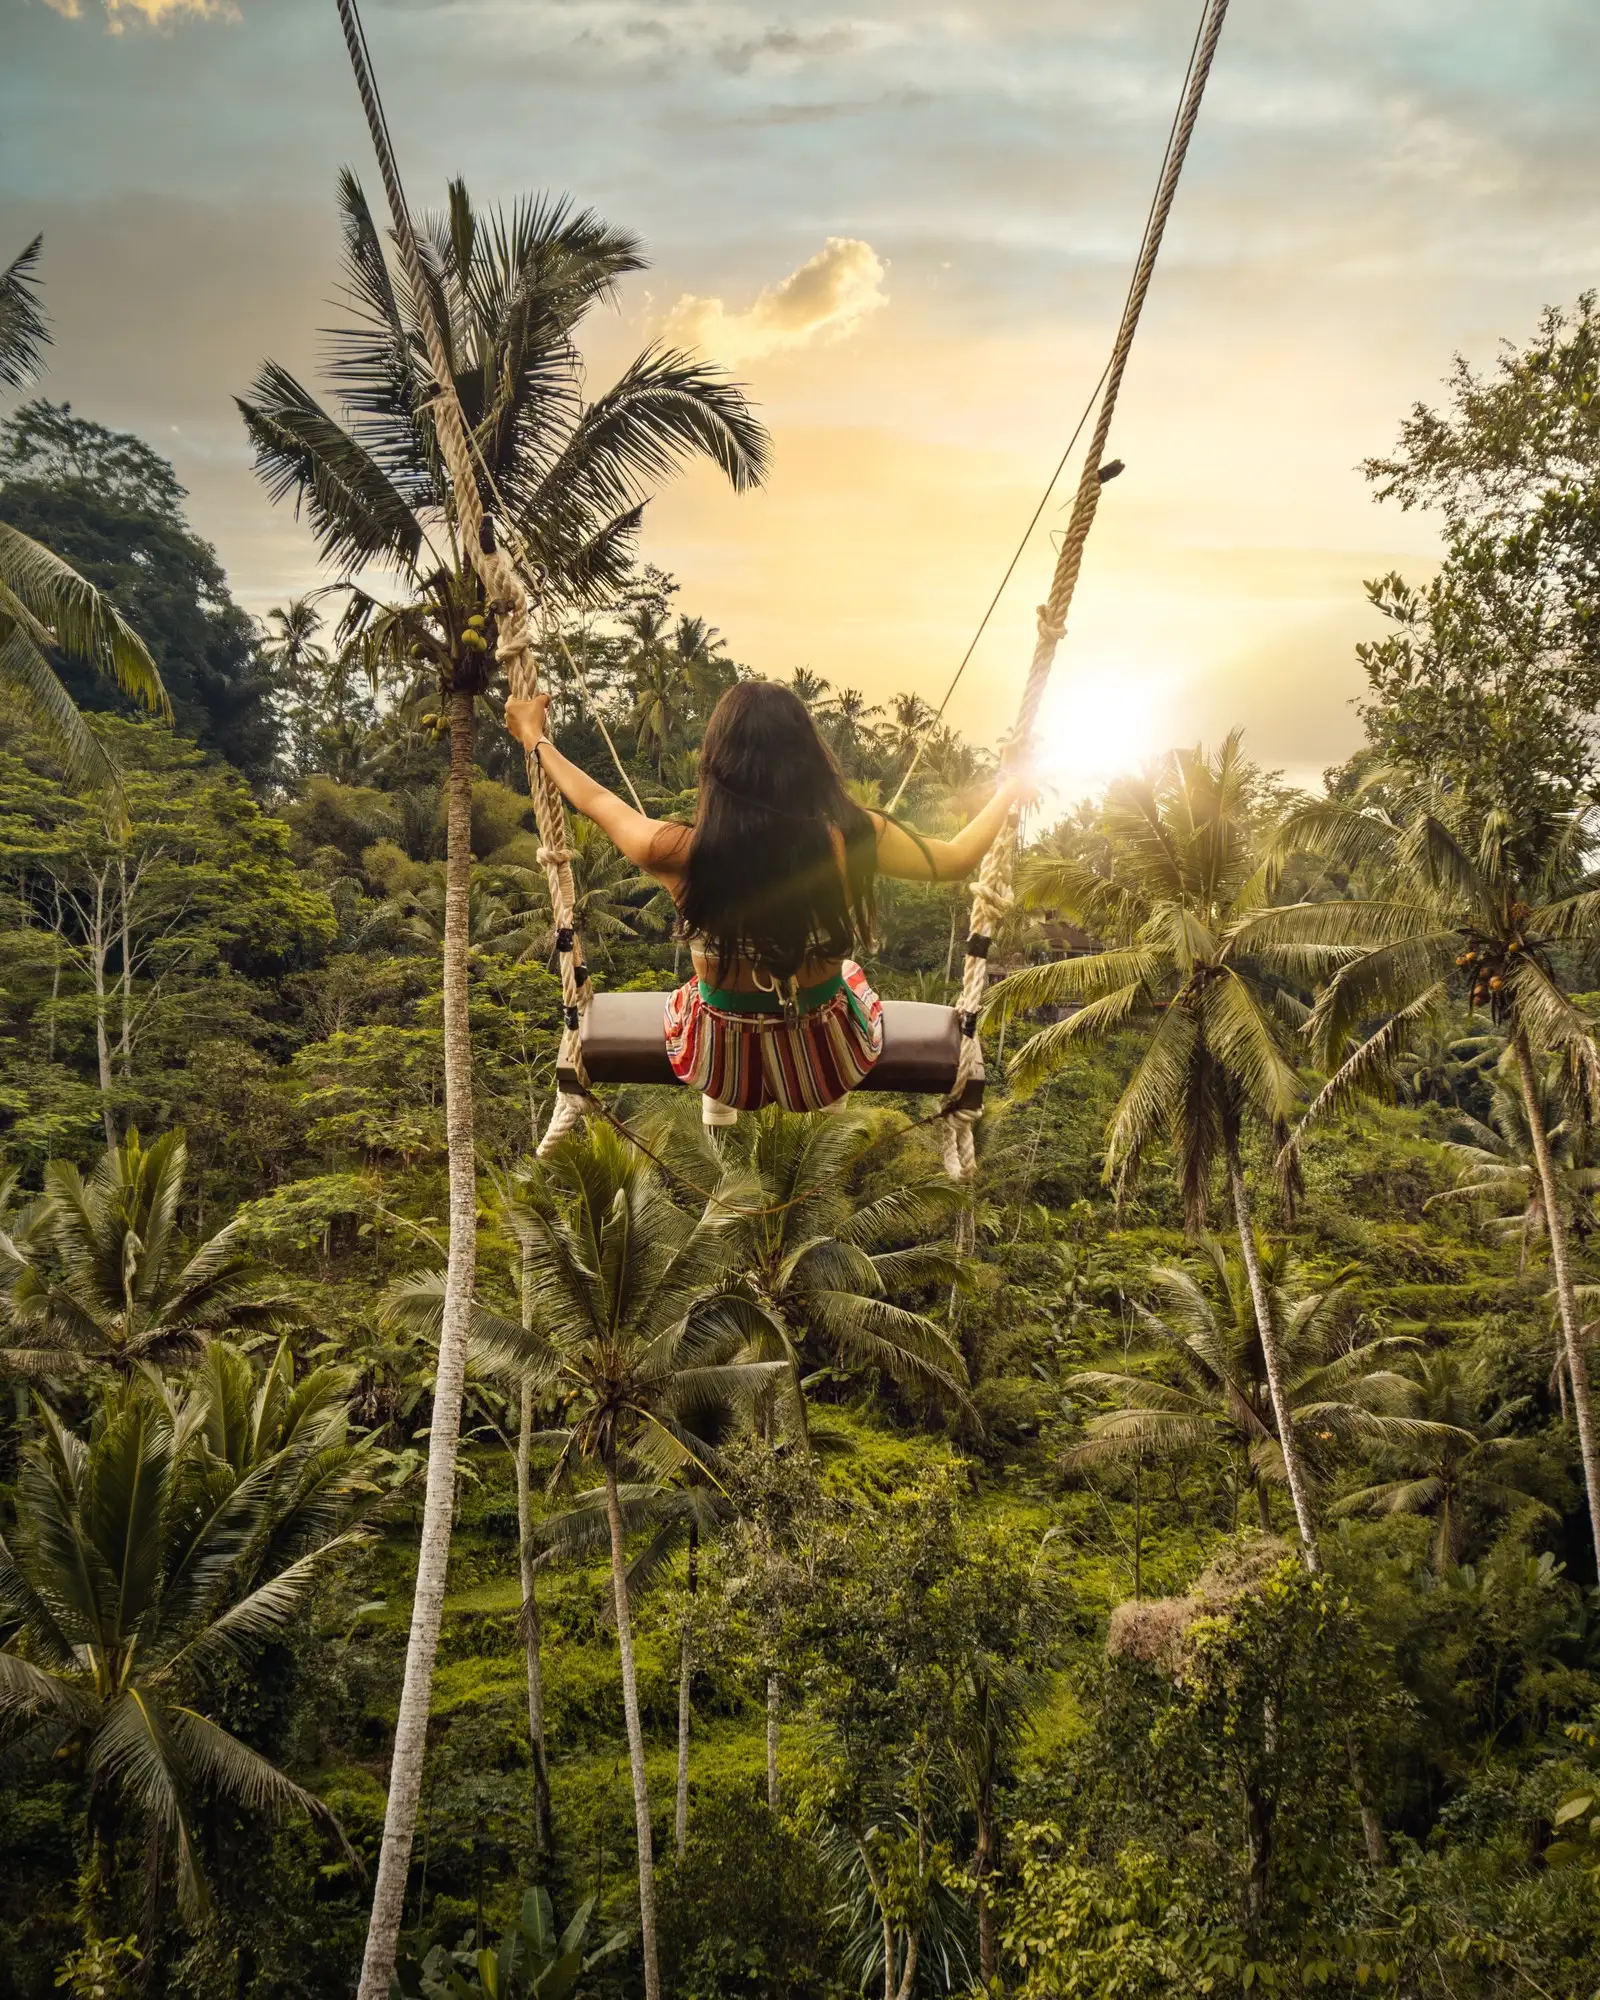 du lịch bali - Bali swings